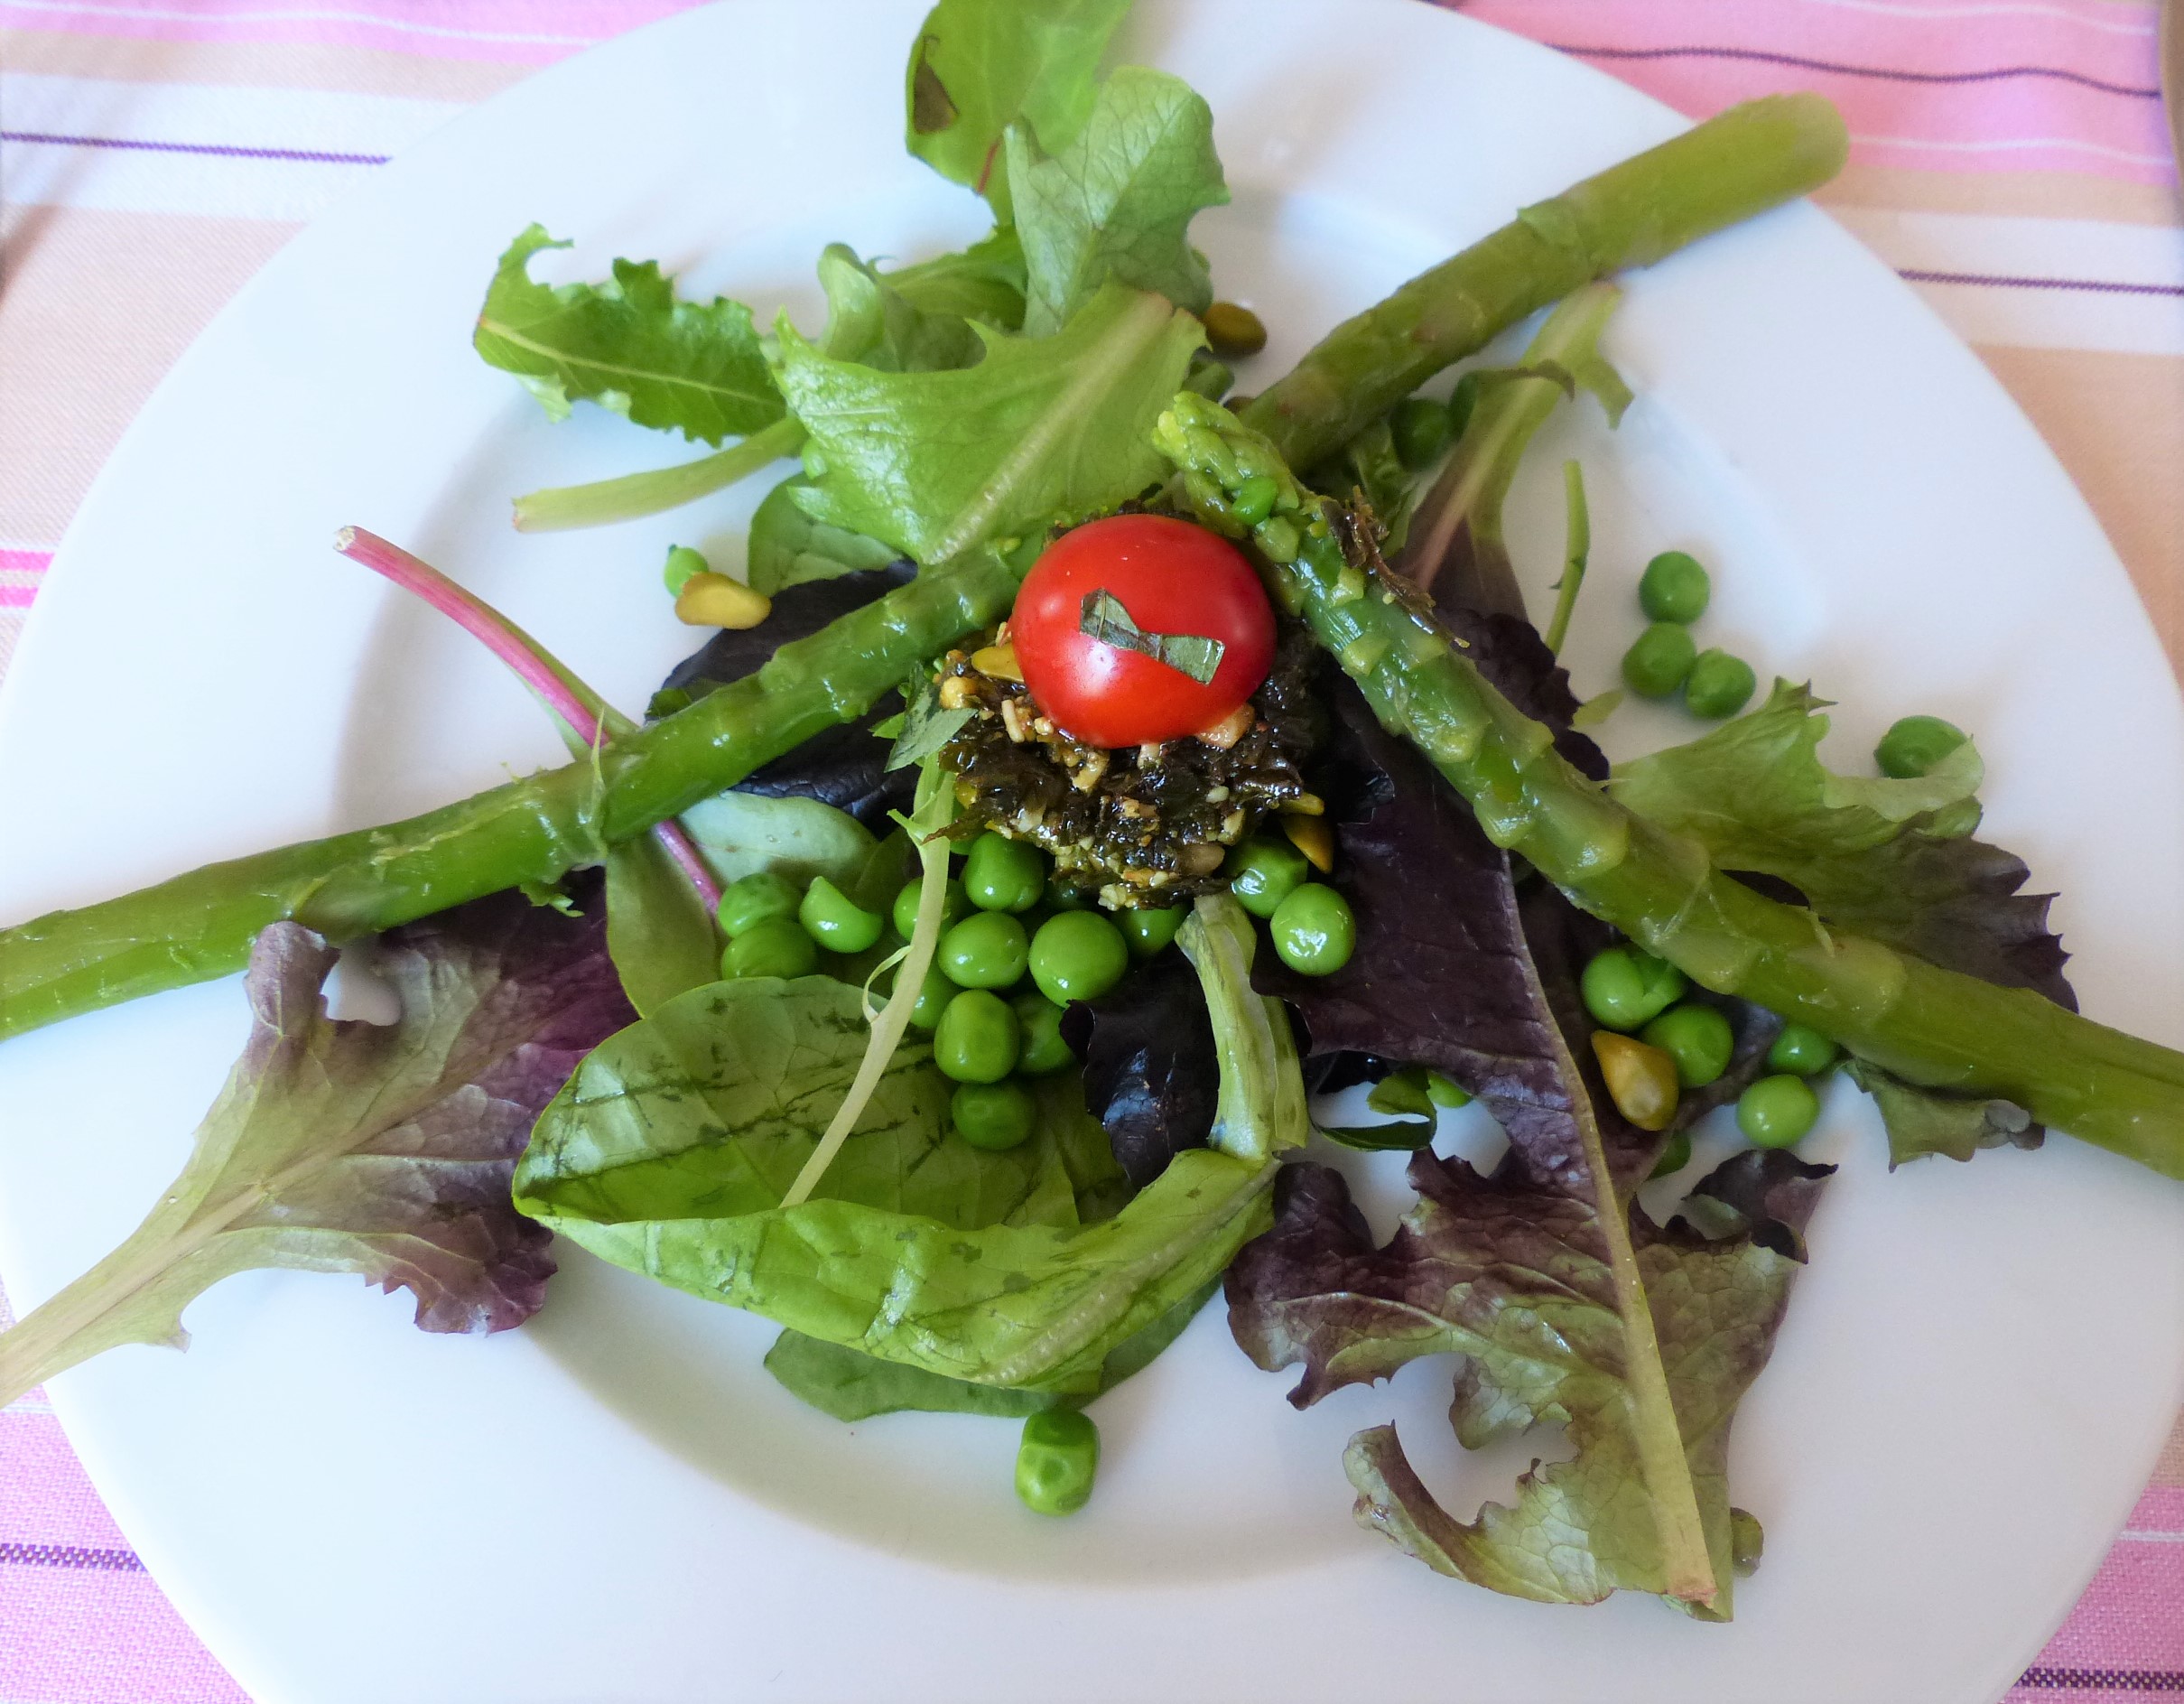 Salade printanière aux asperges vertes et petits pois frais.